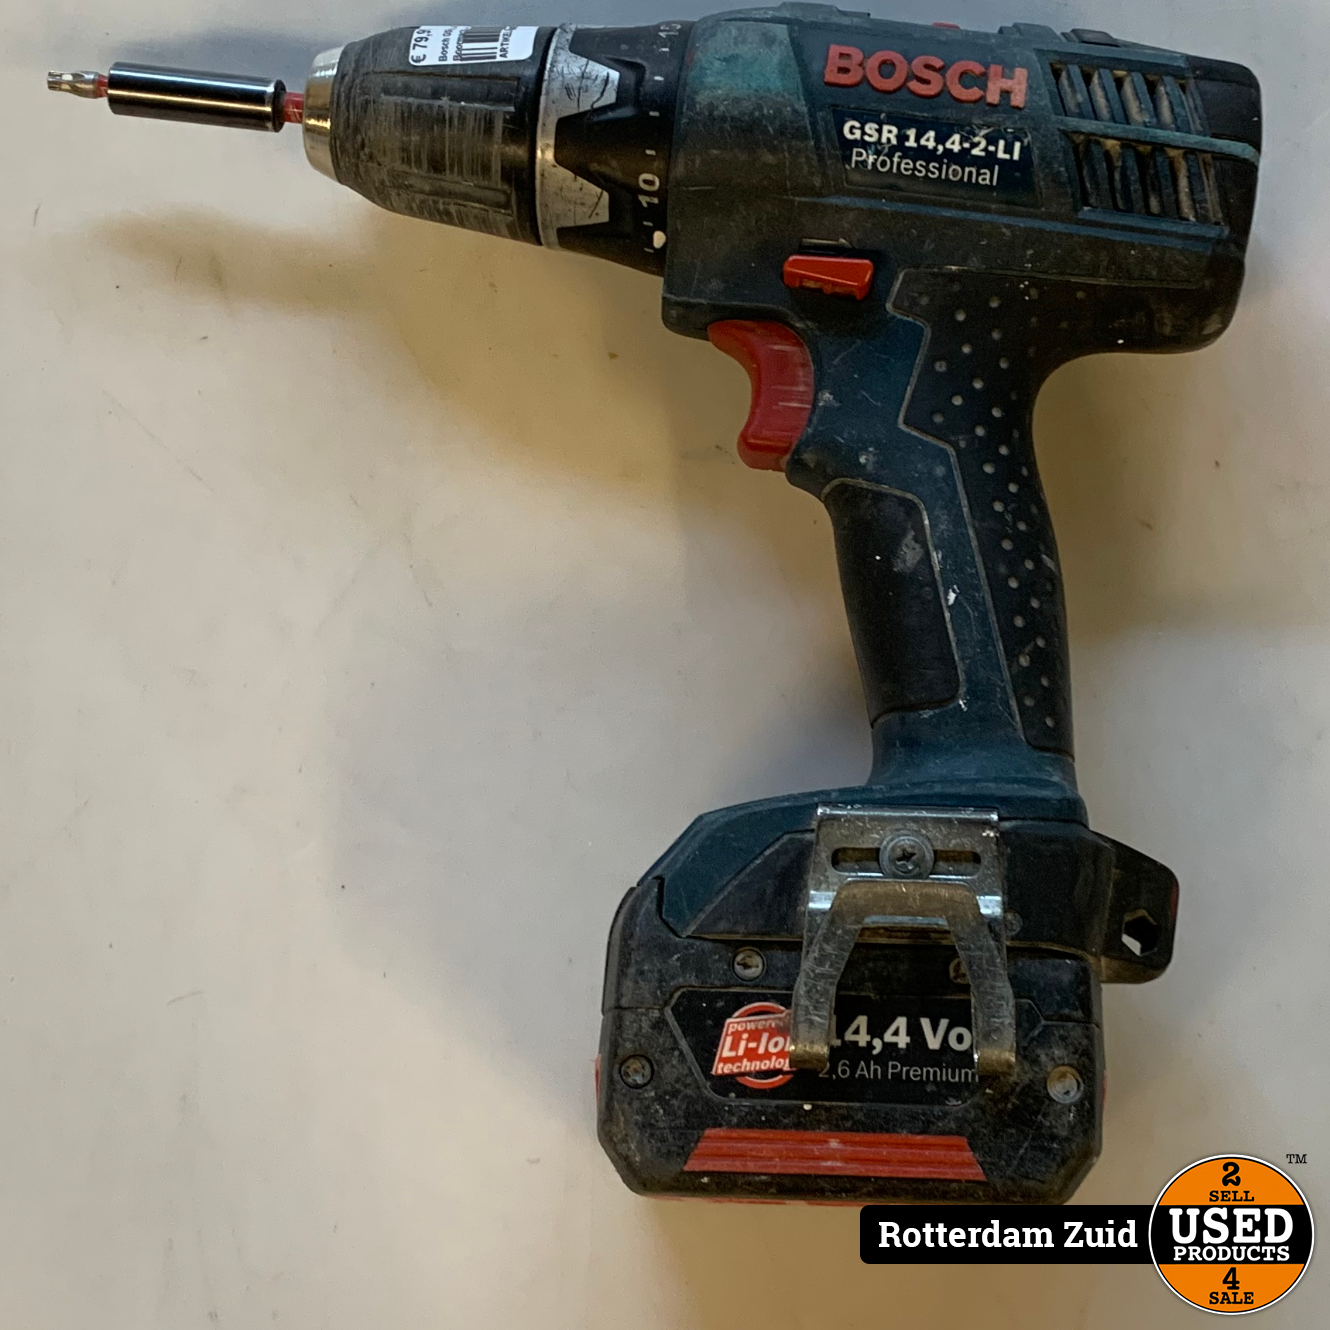 Bosch GSR 14.4 2-LI Boormachine + Accu || met garantie || - Products Rotterdam